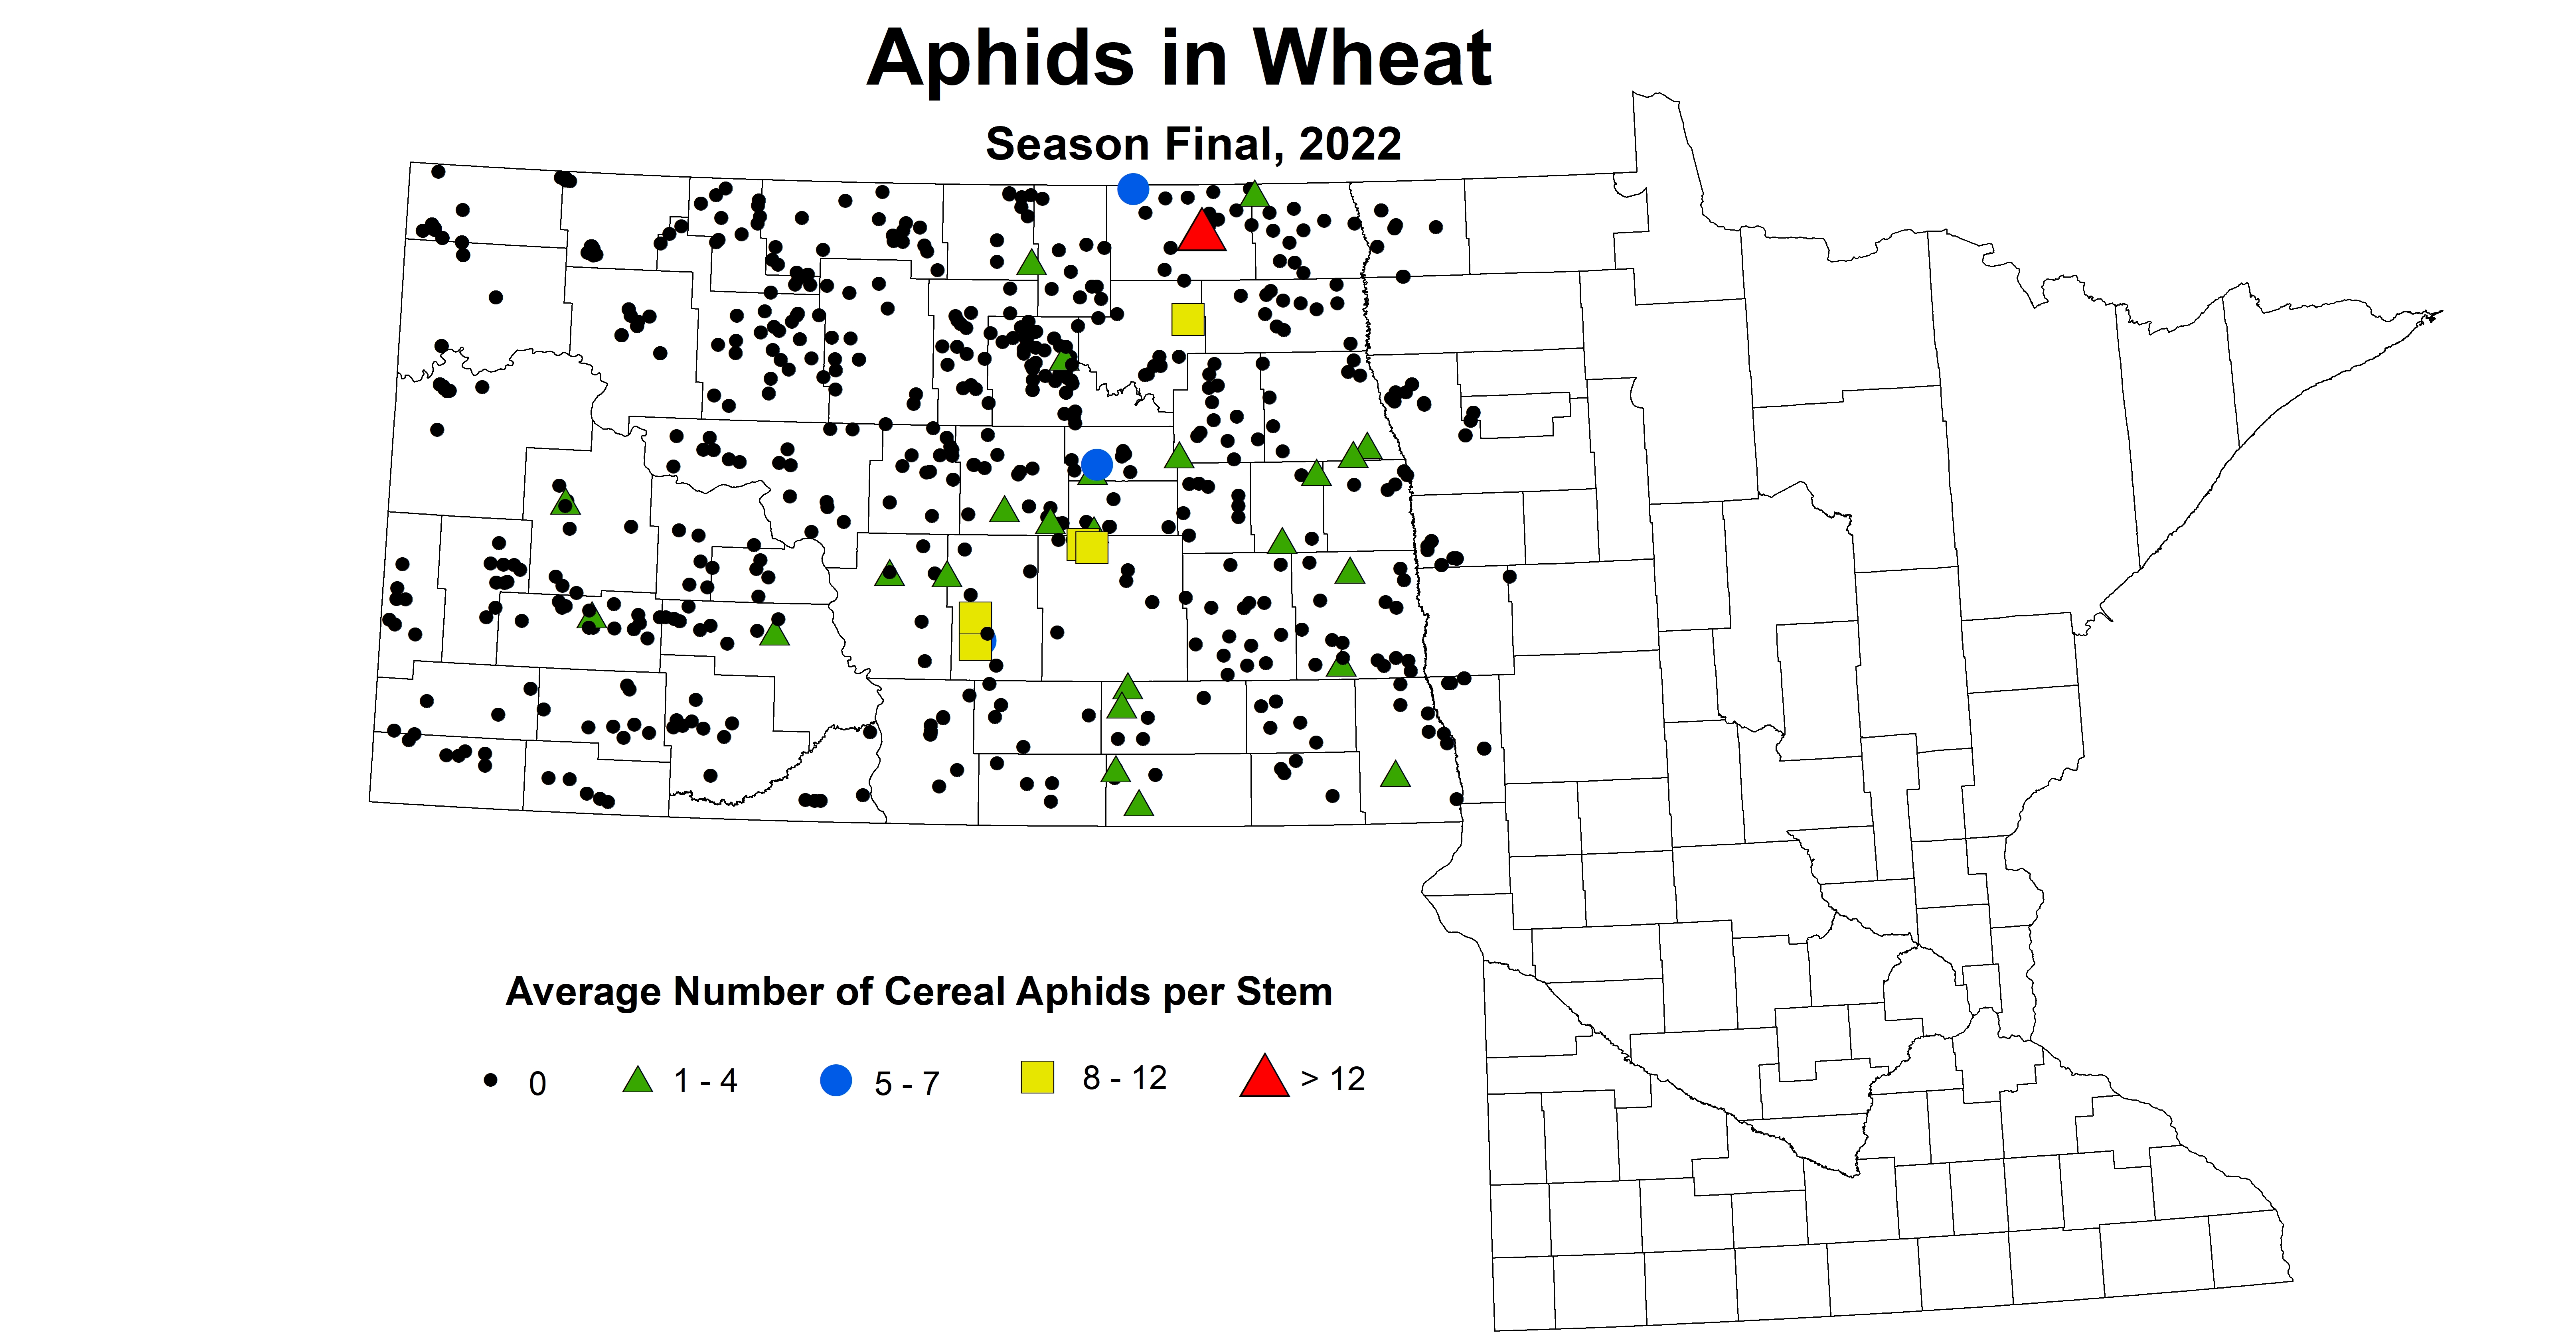 wheat aphids 2022 season final